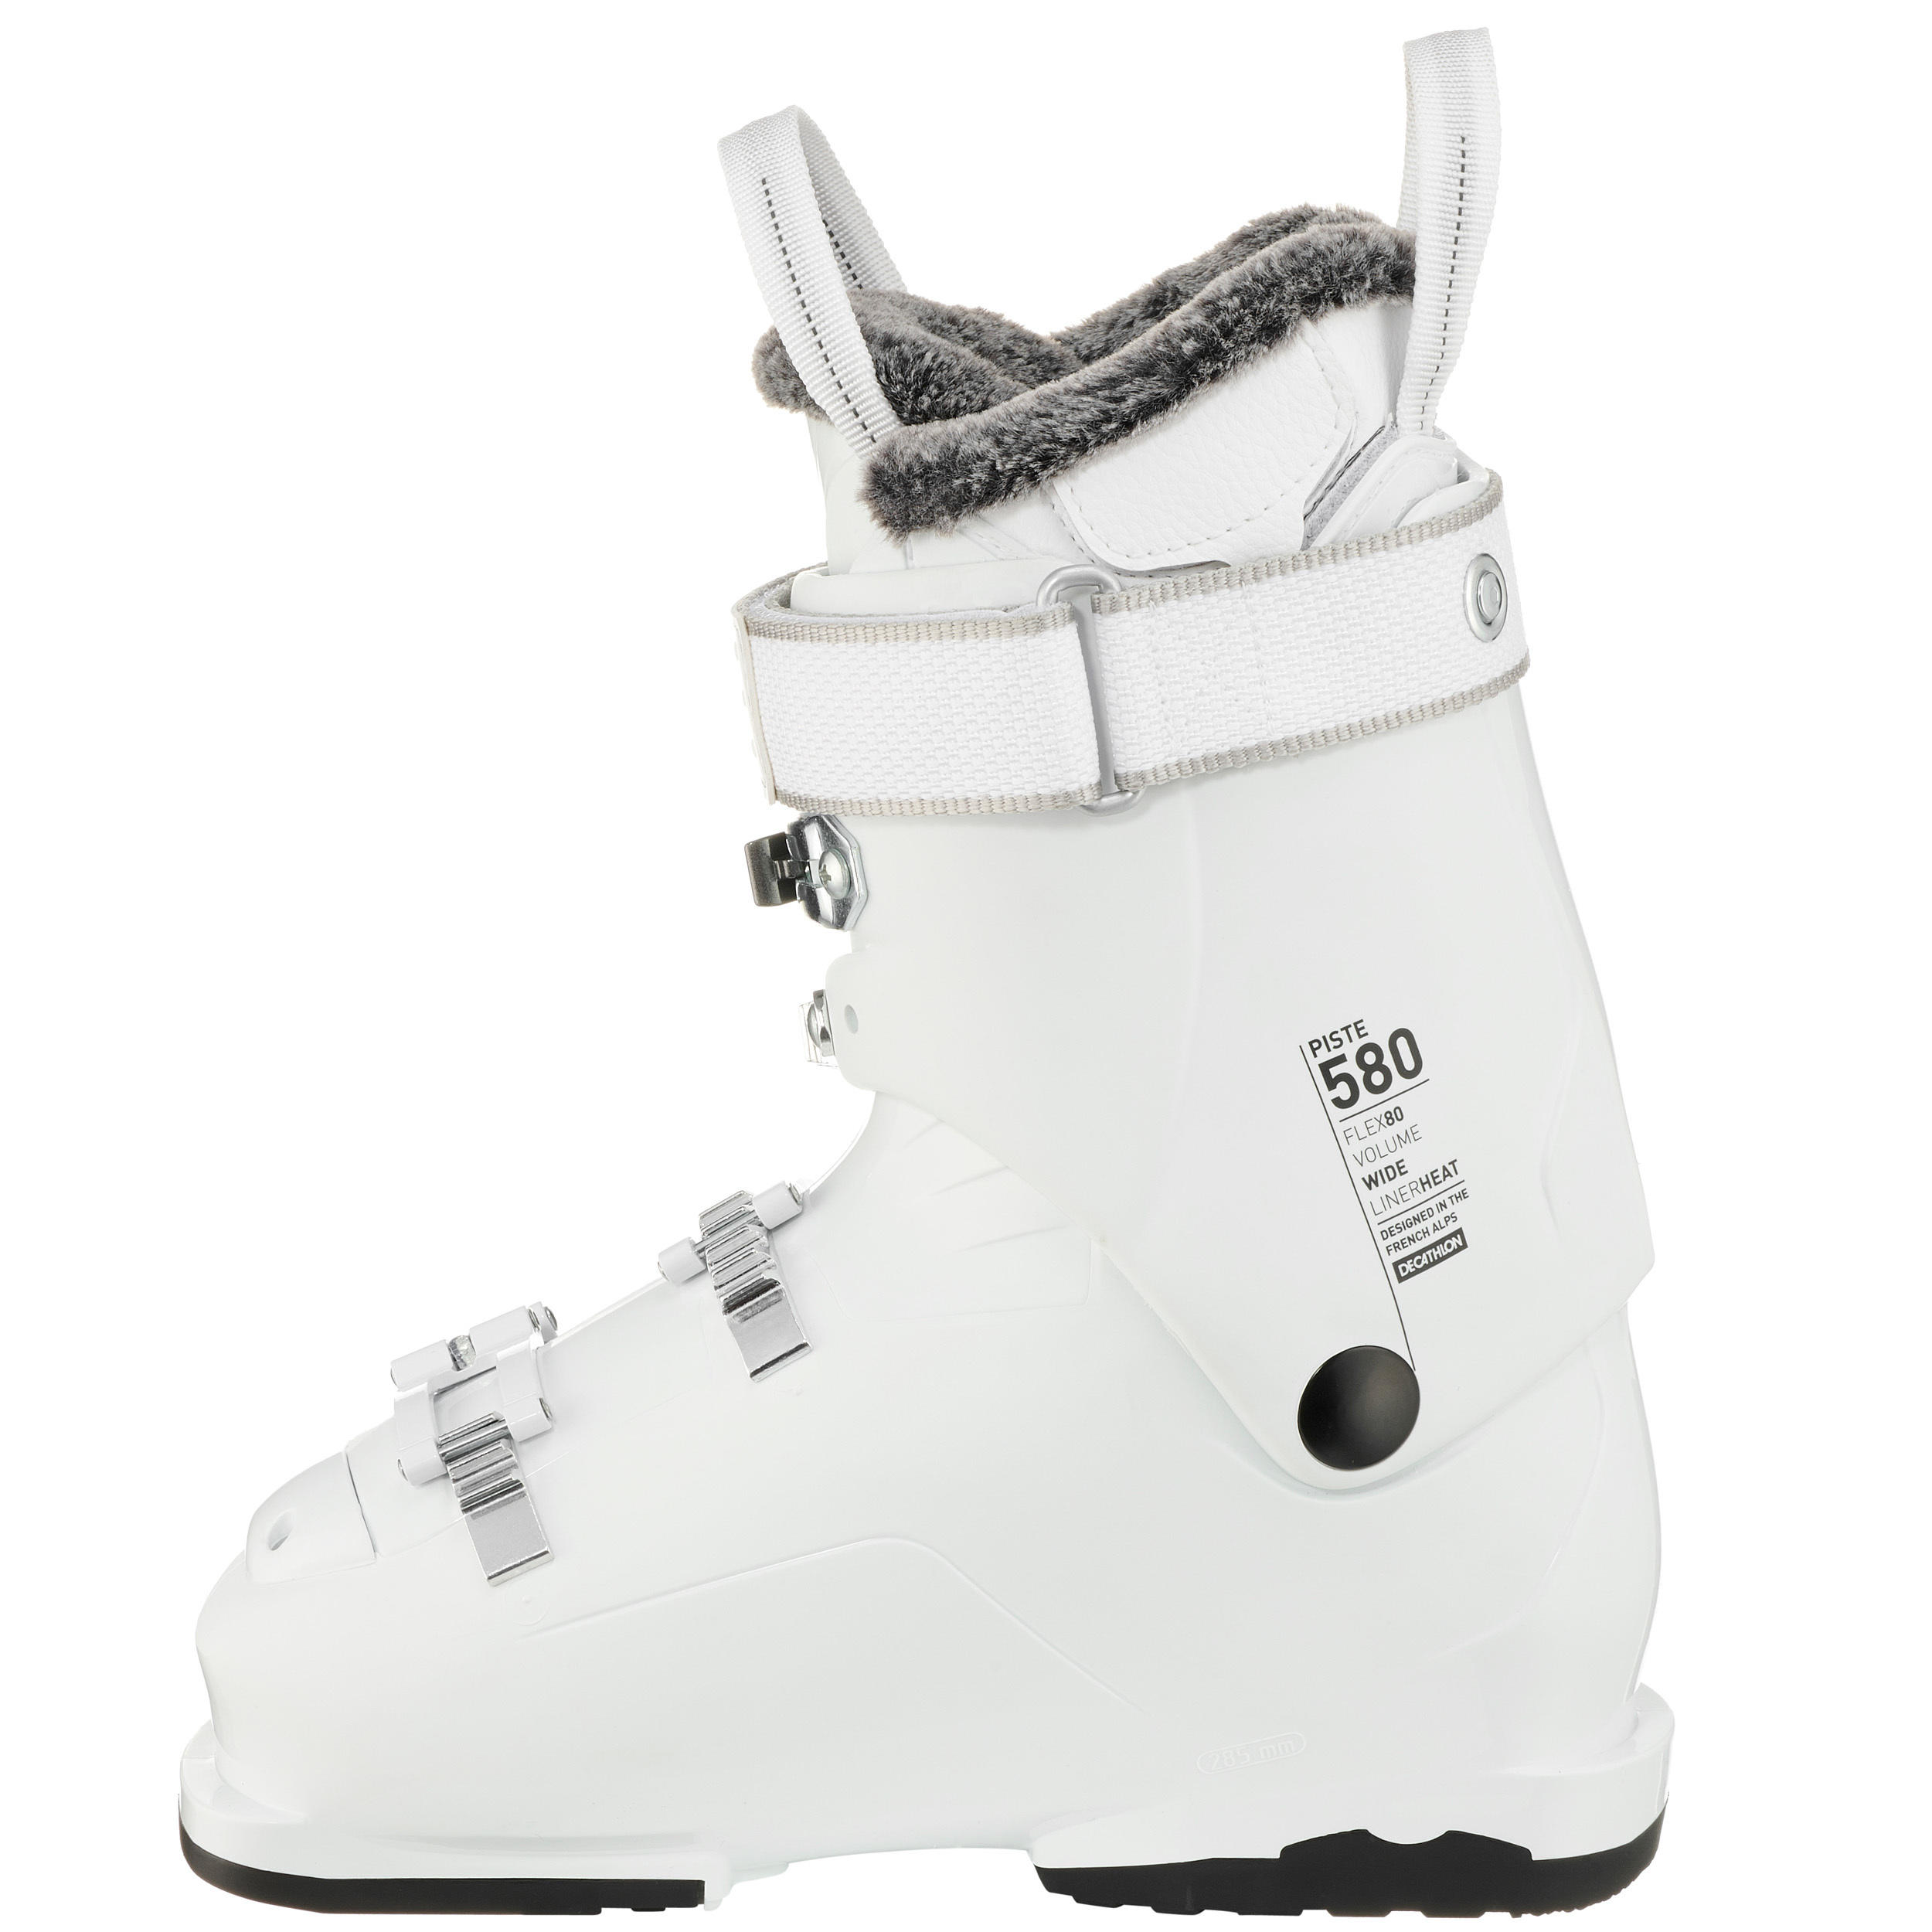 Women's Piste Ski Boots Heat - White 5/15